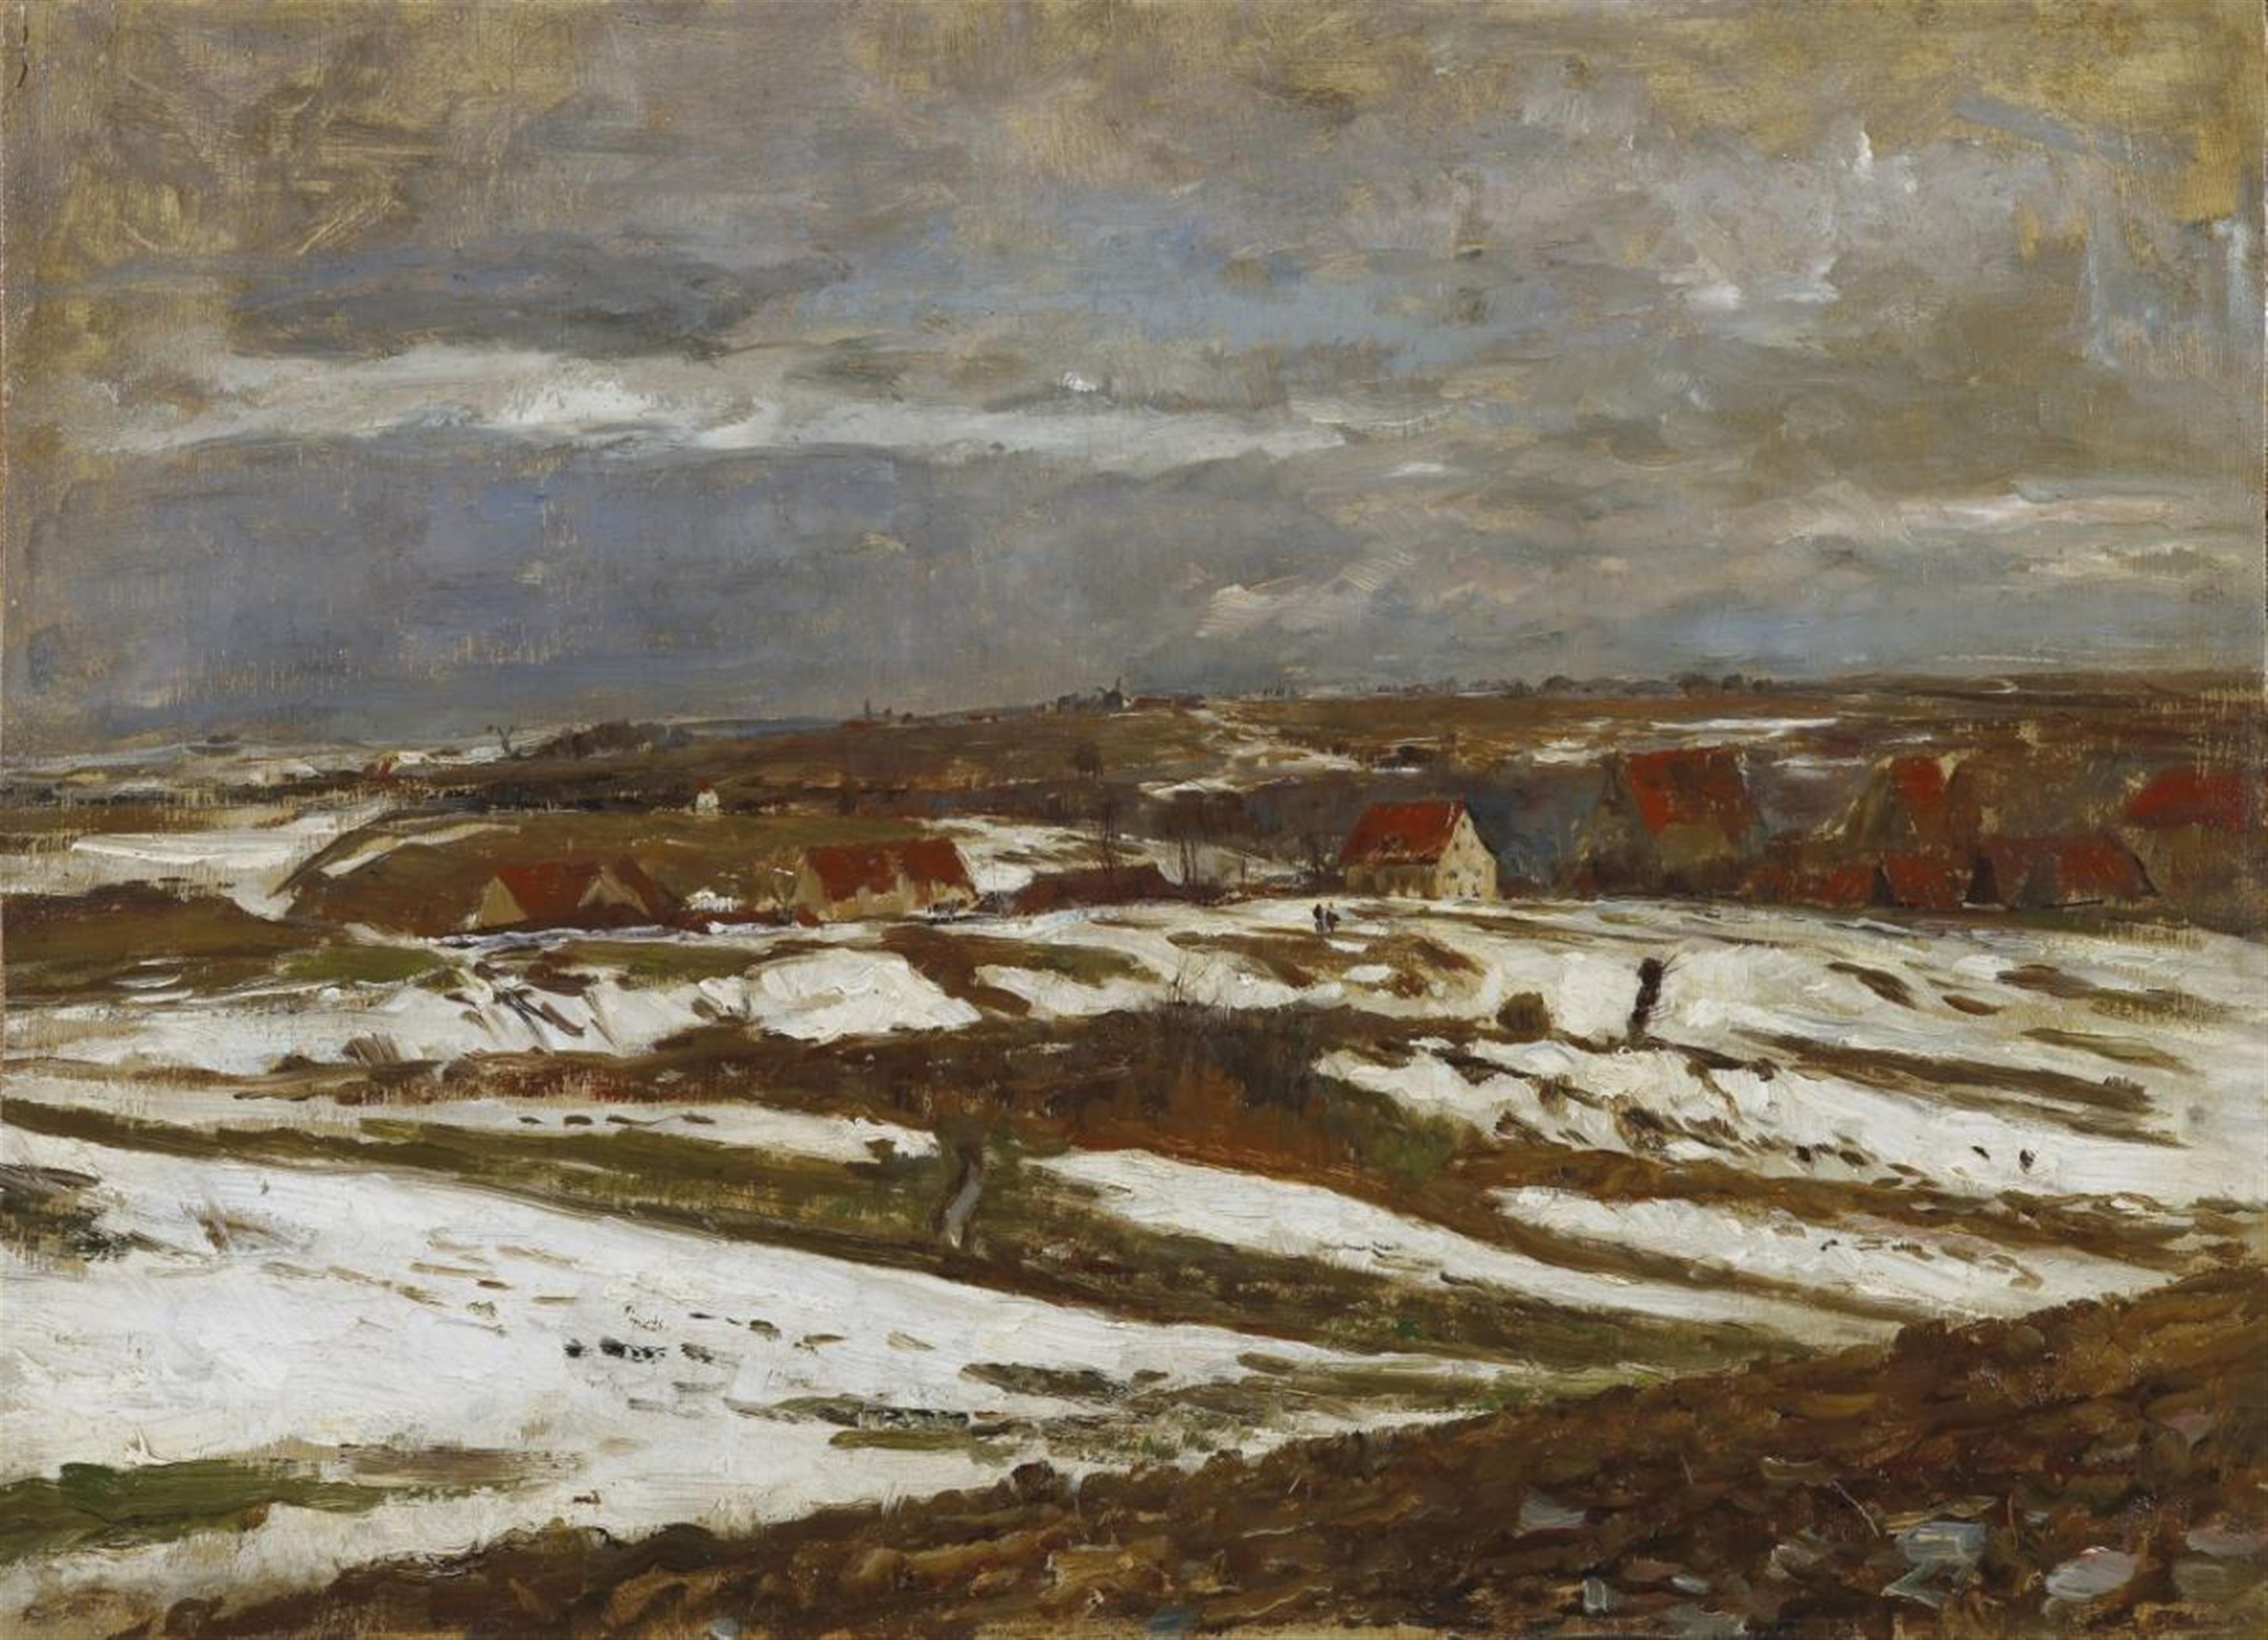 Paul Baum - Landschaft in letztem Schnee bei Weimar, mit einem Dorf in einer Talsenke (Landscape with last snow near Weimar, with a village in a valley) - image-2